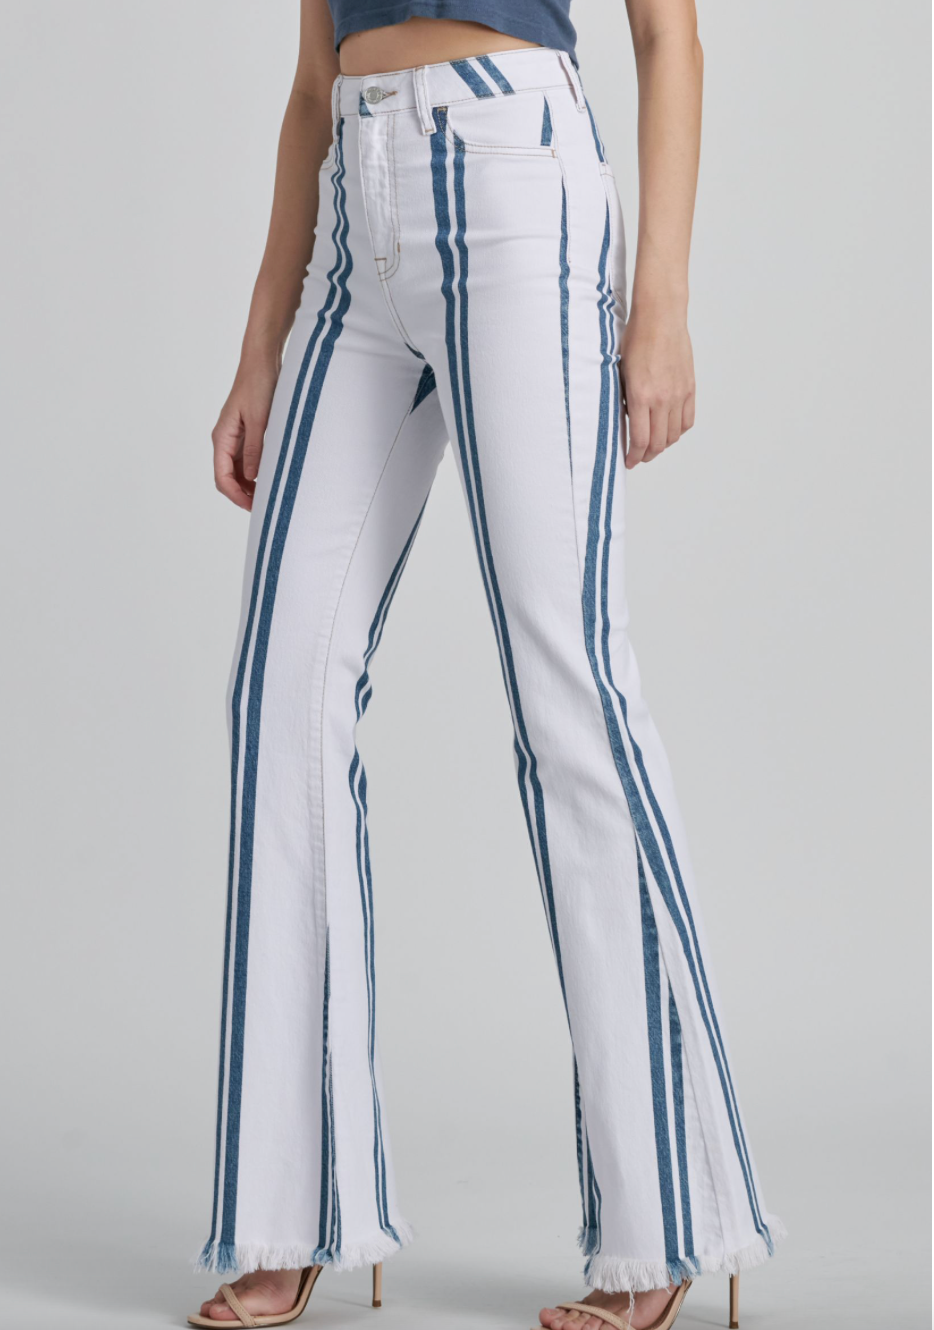 Stripe Flare Jeans - FINAL SALE